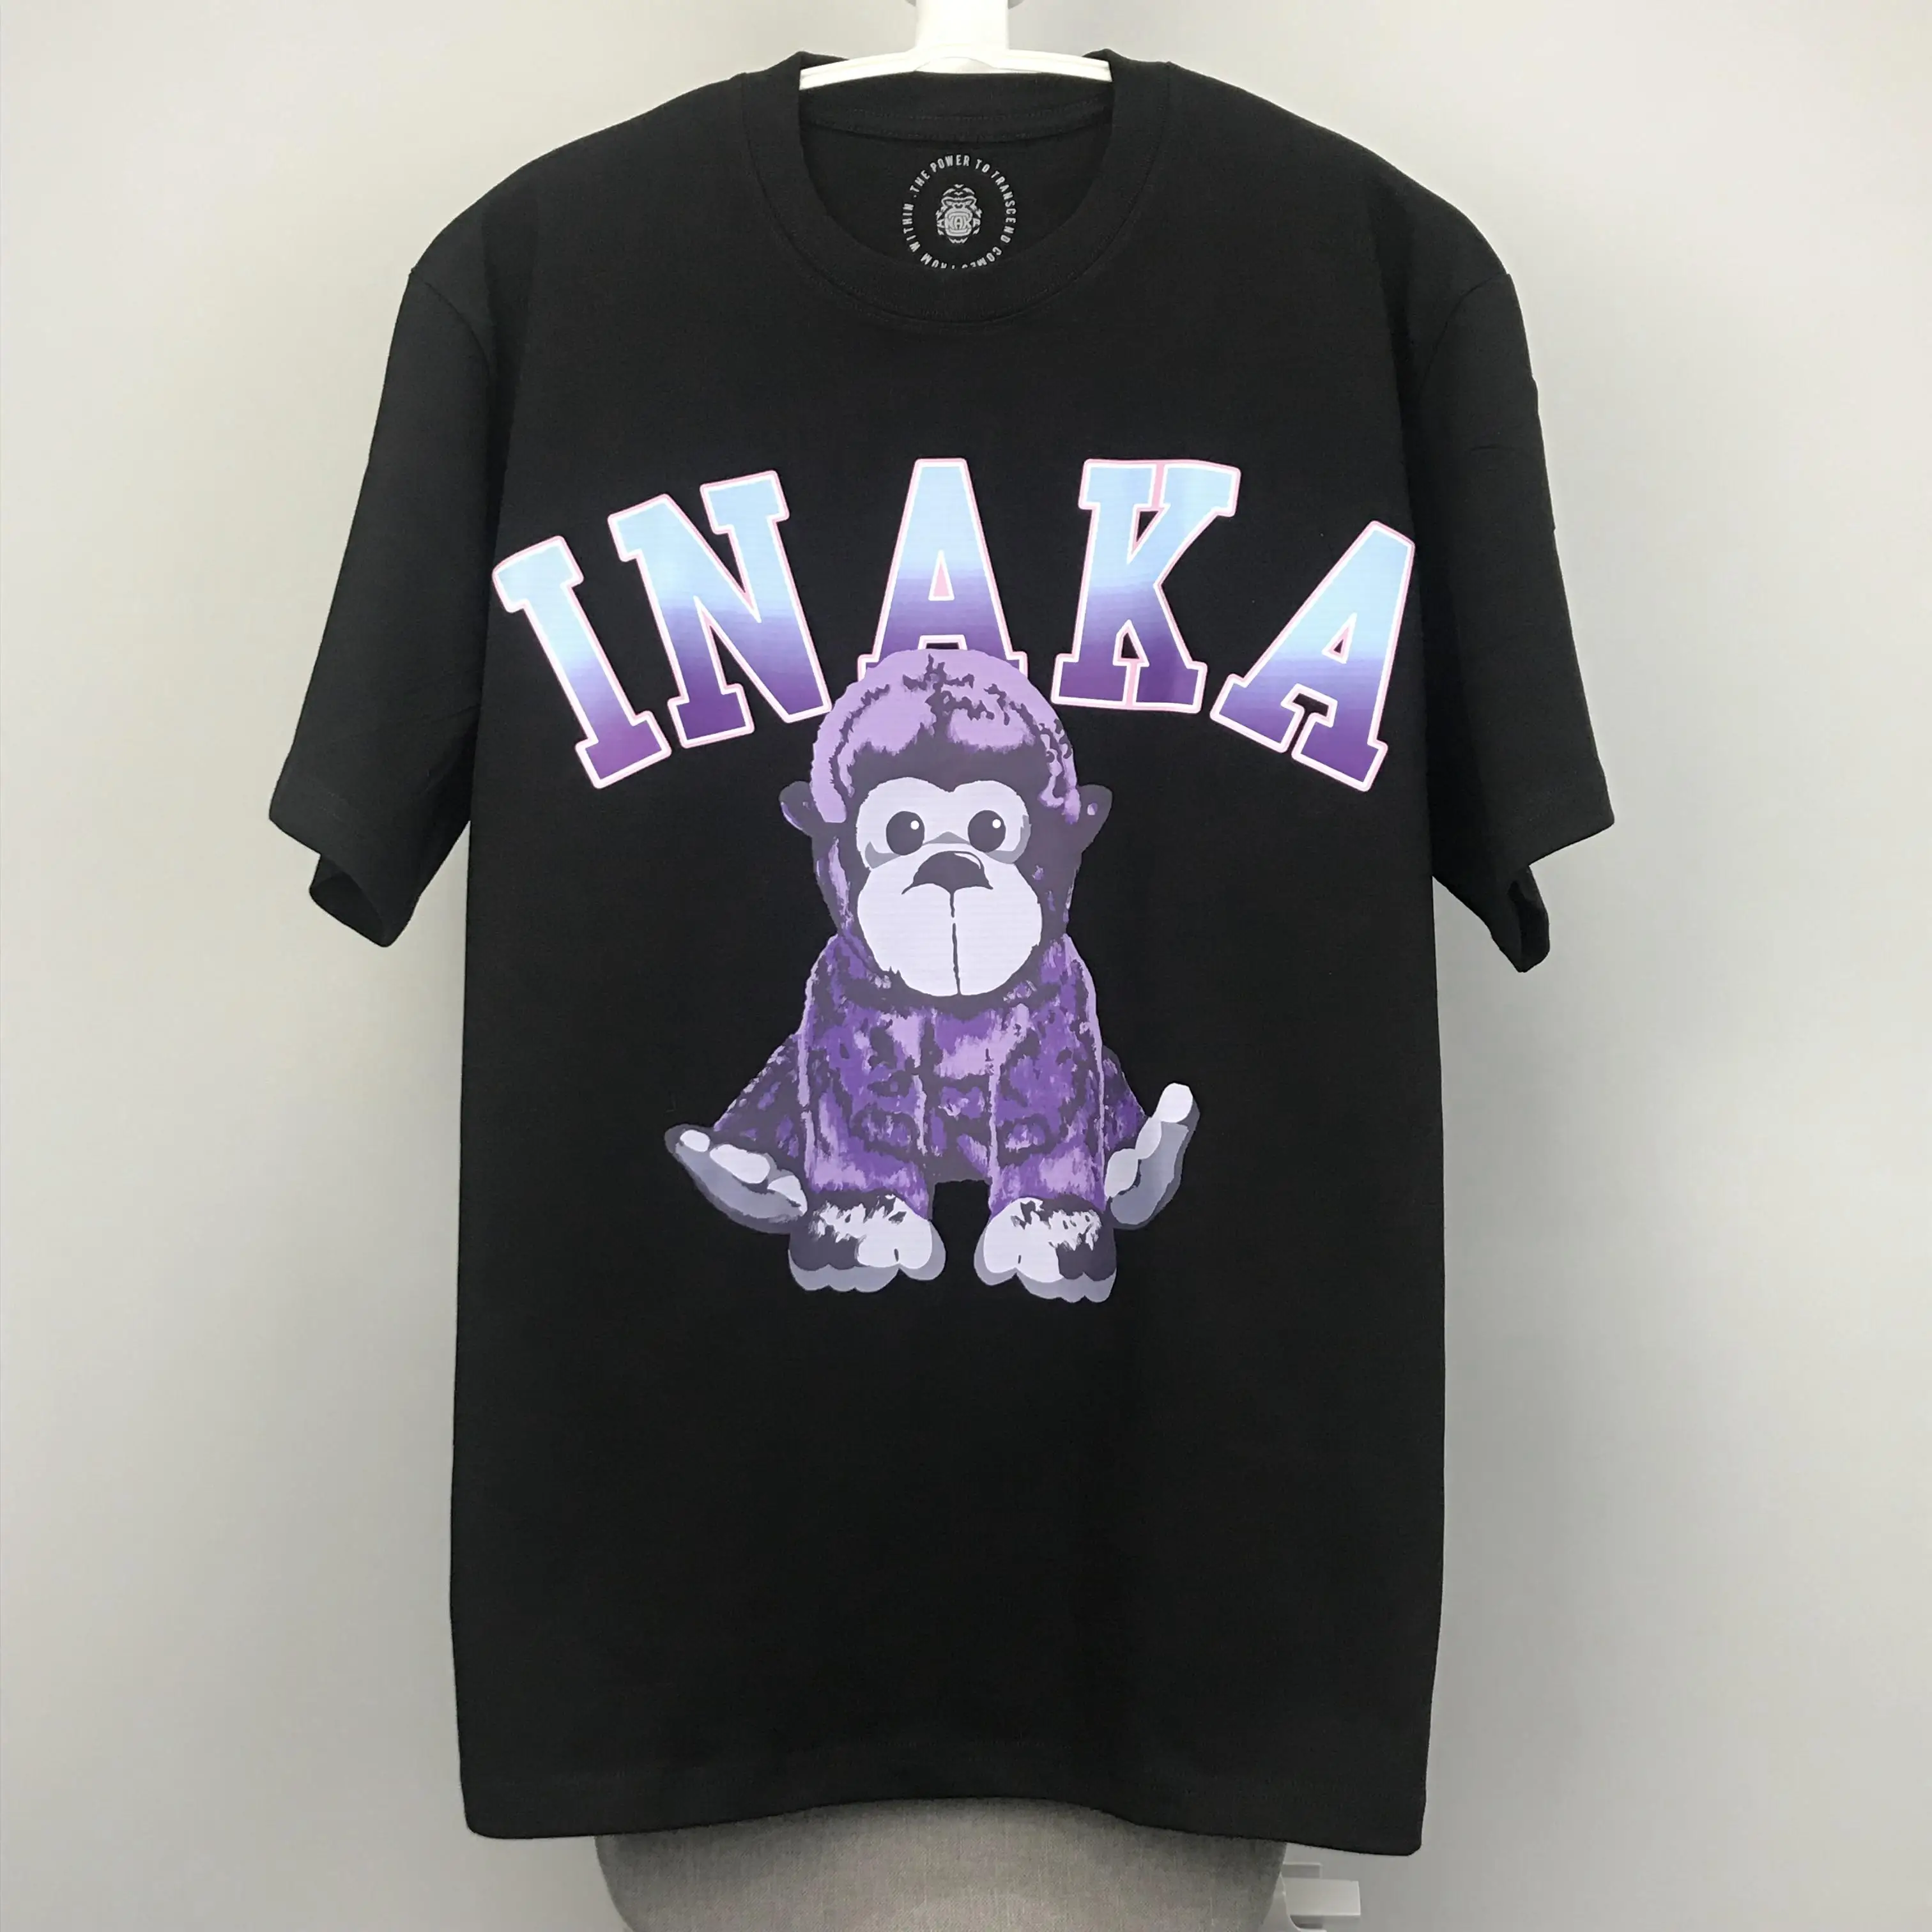 Футболка Inaka Для мужчин И женщин, повседневная футболка с рисунком медведя, трафаретная печать, Размер США, футболка